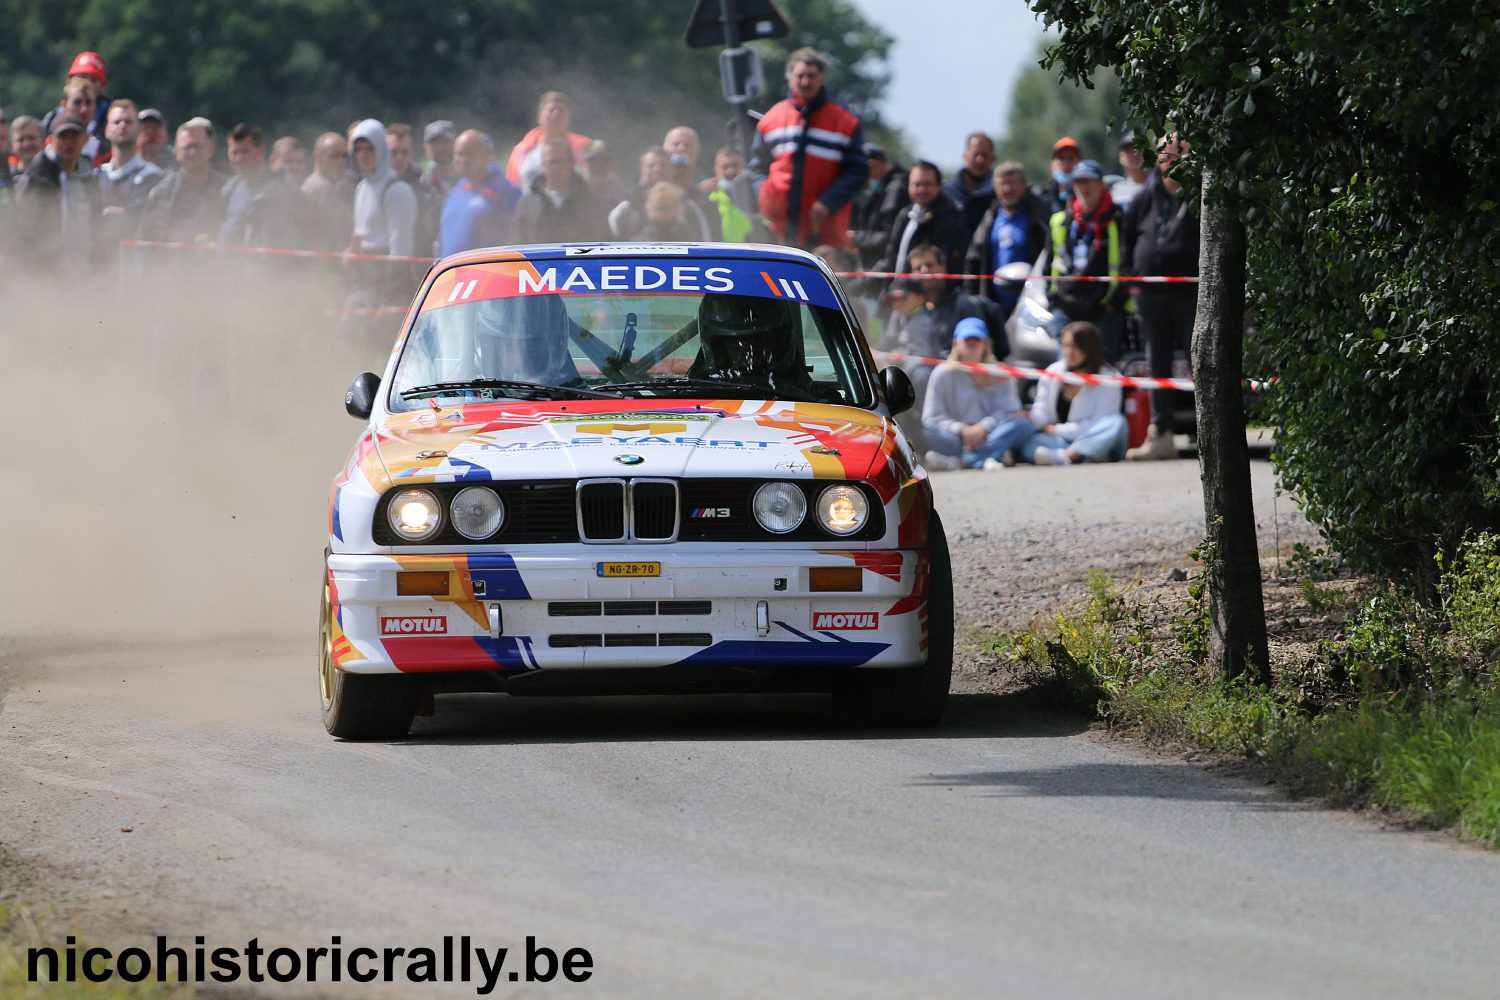 Verslag Rally van Staden: Pieter-Jan Maeyaert wint in zijn debuut met zijn M3 !